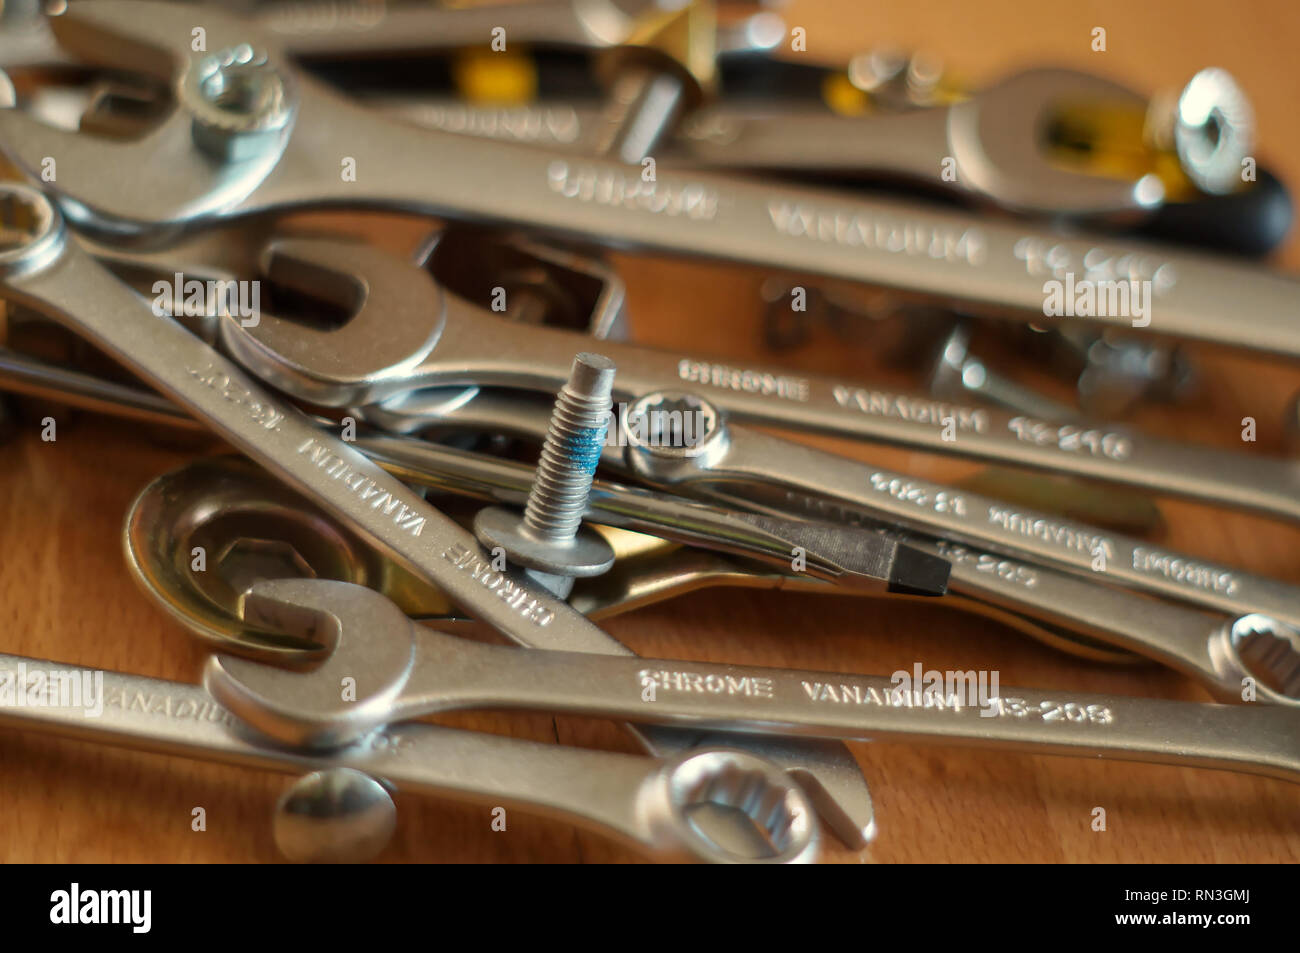 Fai da te accessori - strumenti di fabbro, chiavi, cacciaviti, dadi e bulloni su una tavola di legno Foto Stock